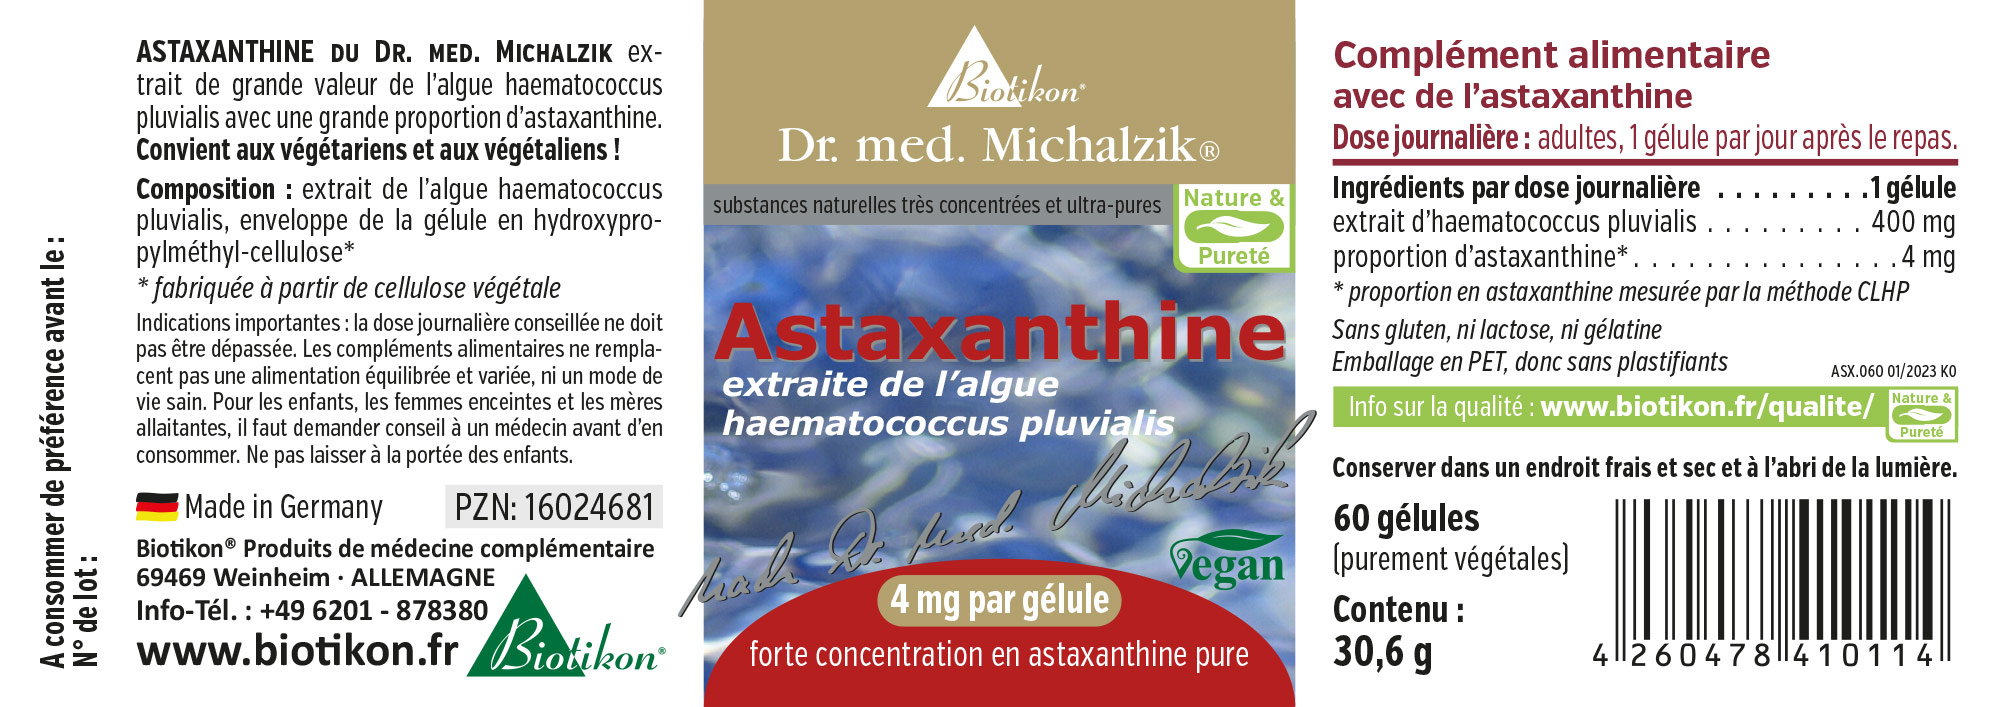 Astaxanthin nach Dr. med. Michalzik